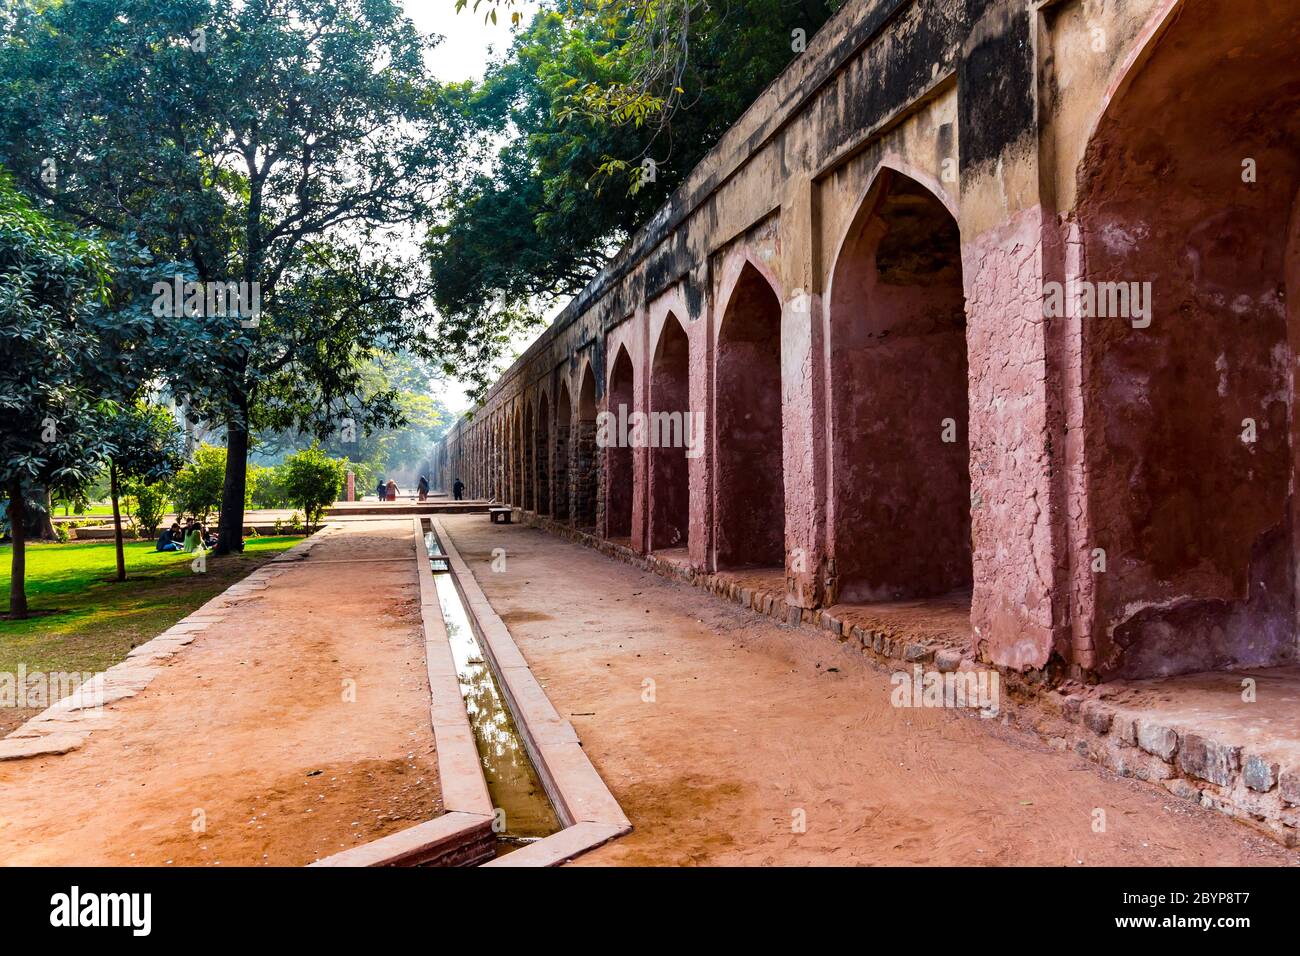 Vista reale del primo giardino-tomba nel subcontinente indiano. La Tomba è un ottimo esempio di architettura persiana. Situato nel Nizamuddin Foto Stock